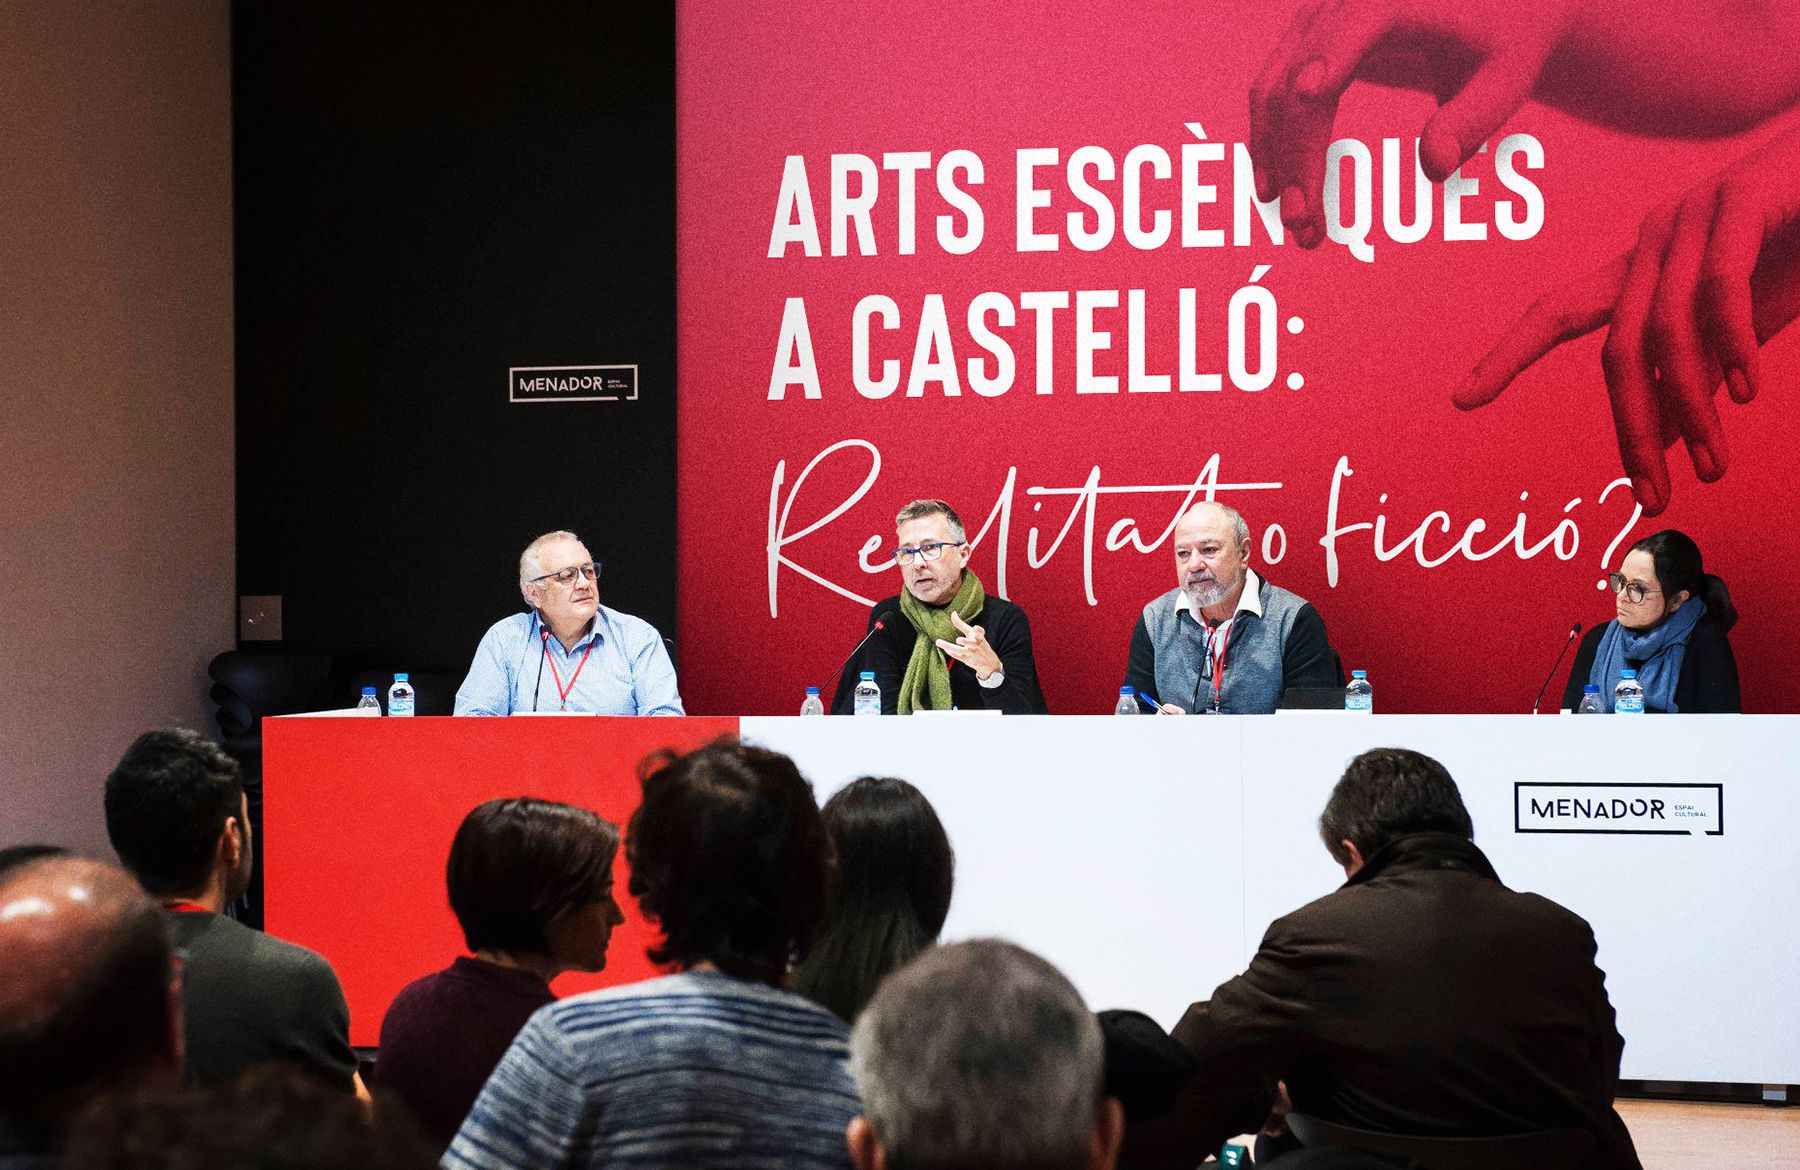 Congreso de Artes Escénicas de Castellón - Eclectick Studio